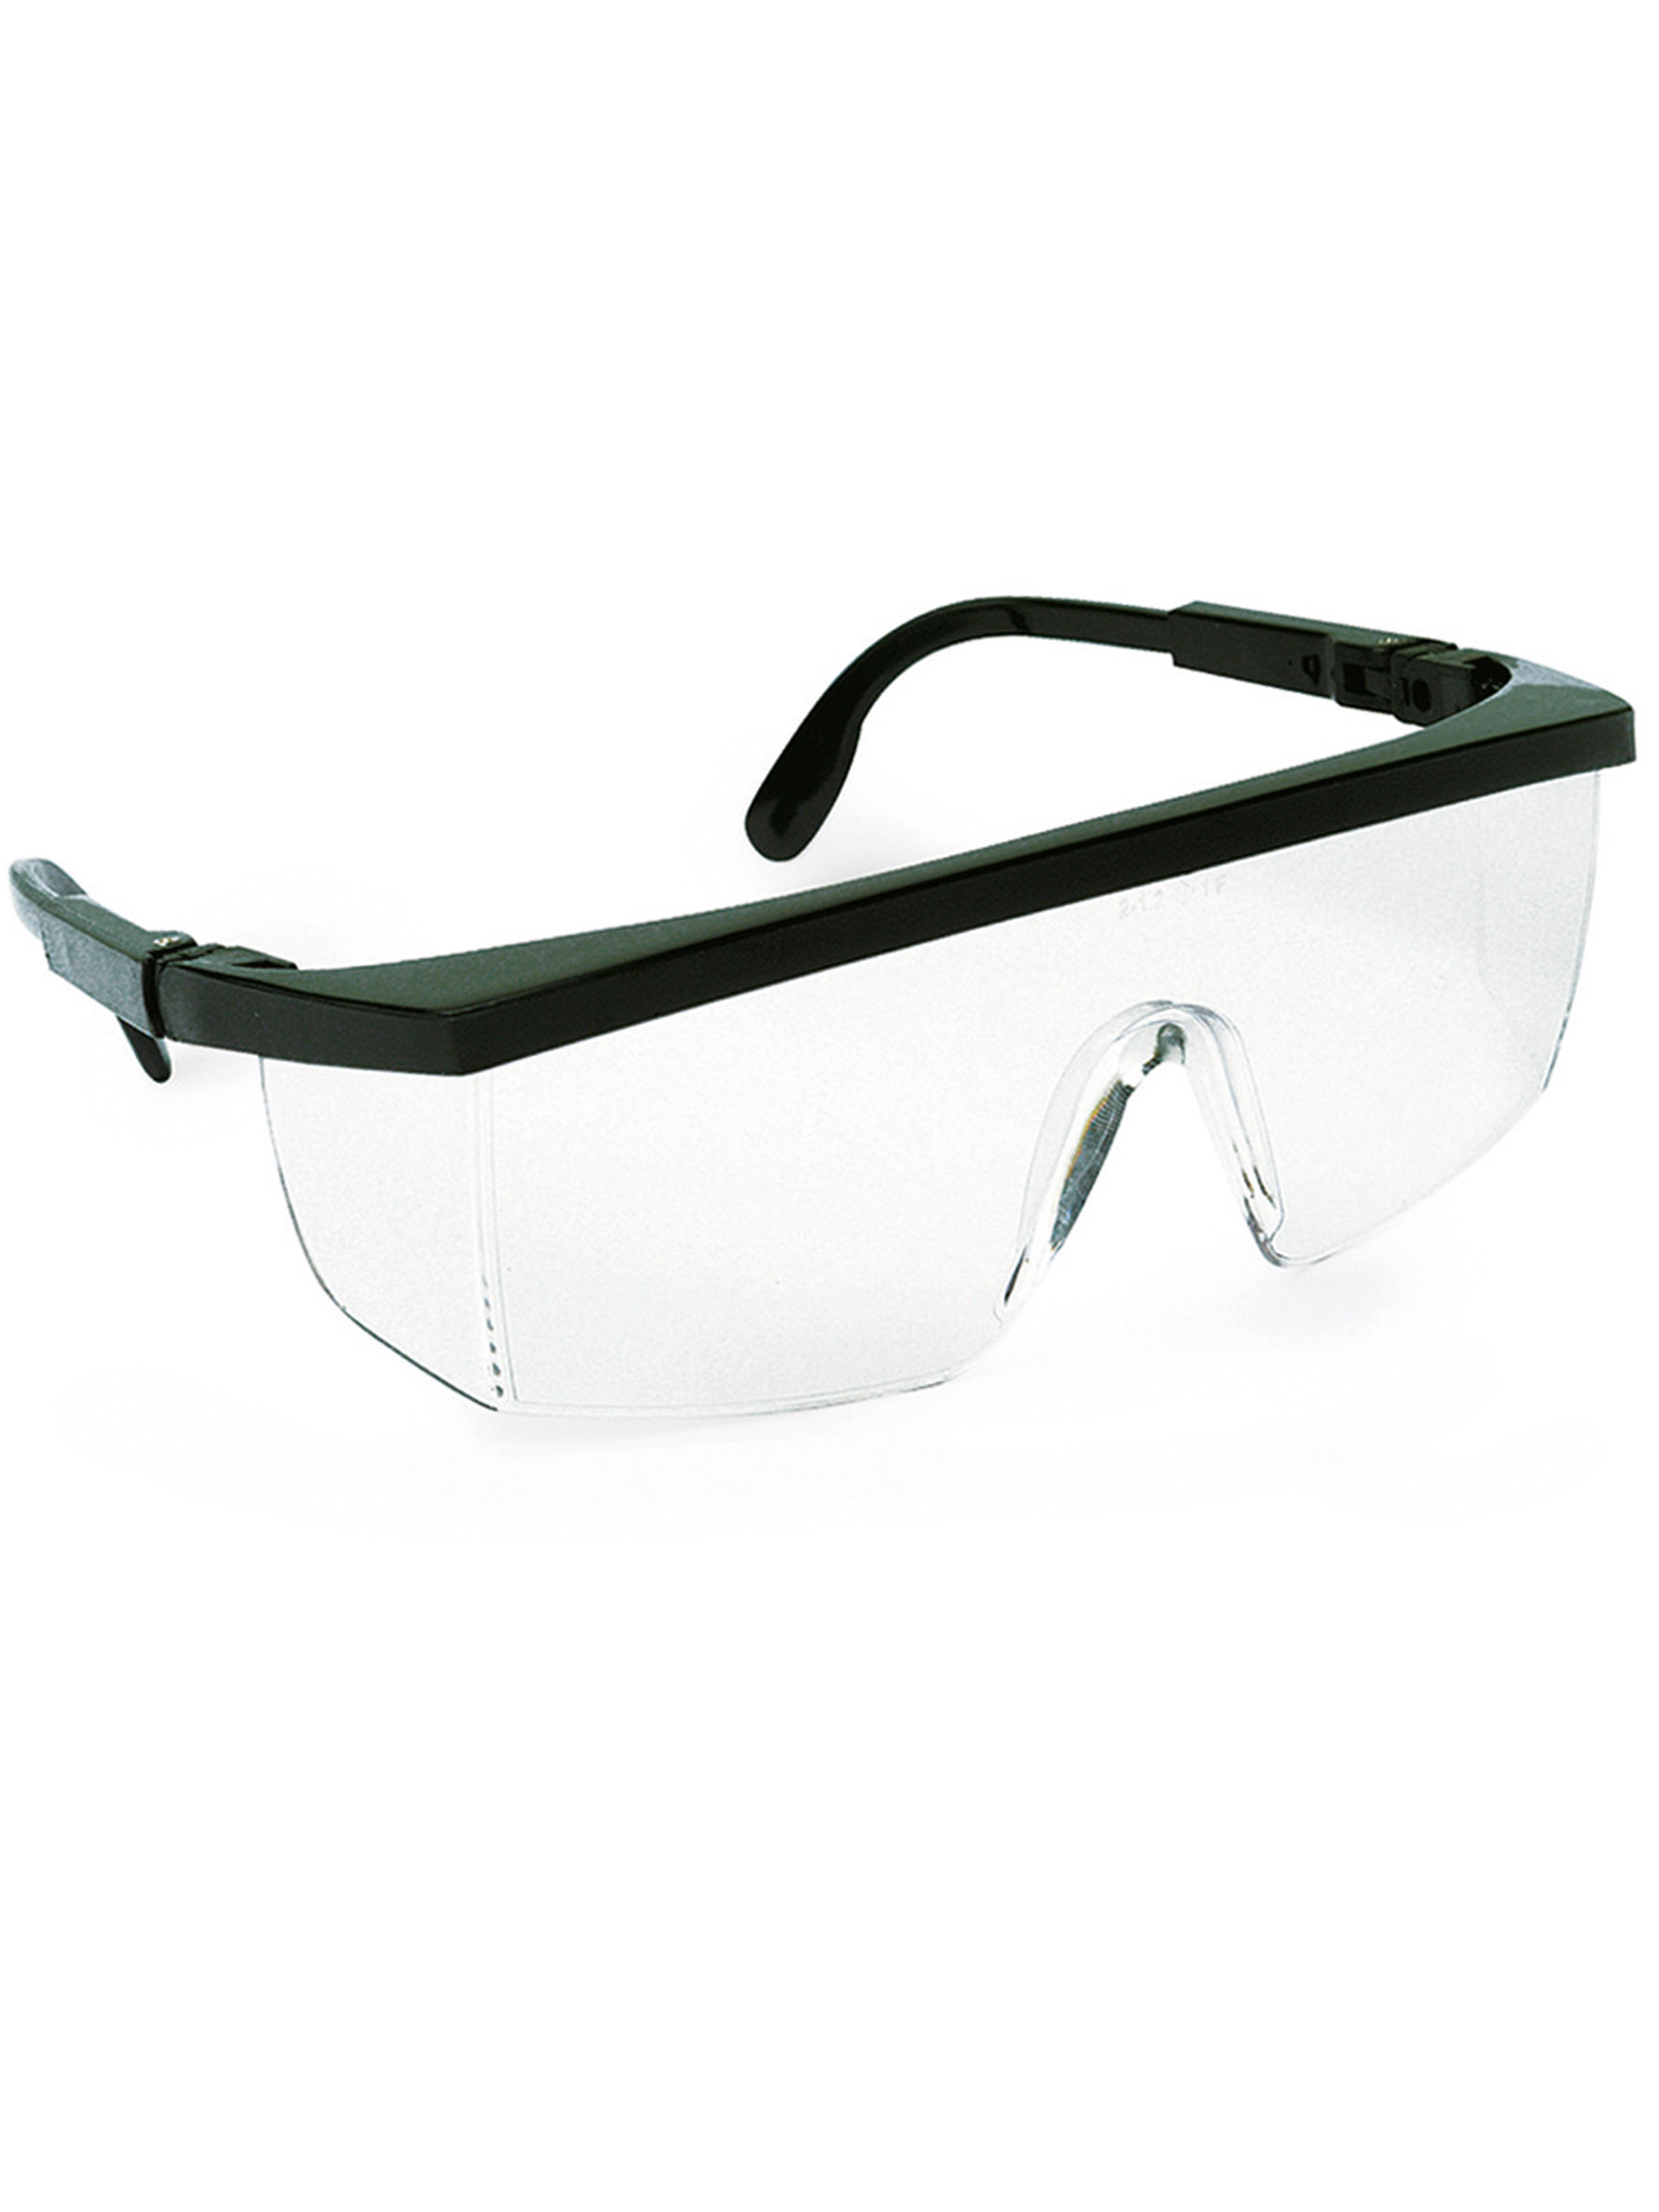 Productos, Protección Ocular, Gafas de montura universal, Ref. 2188GNSIN, Marca Protección Laboral